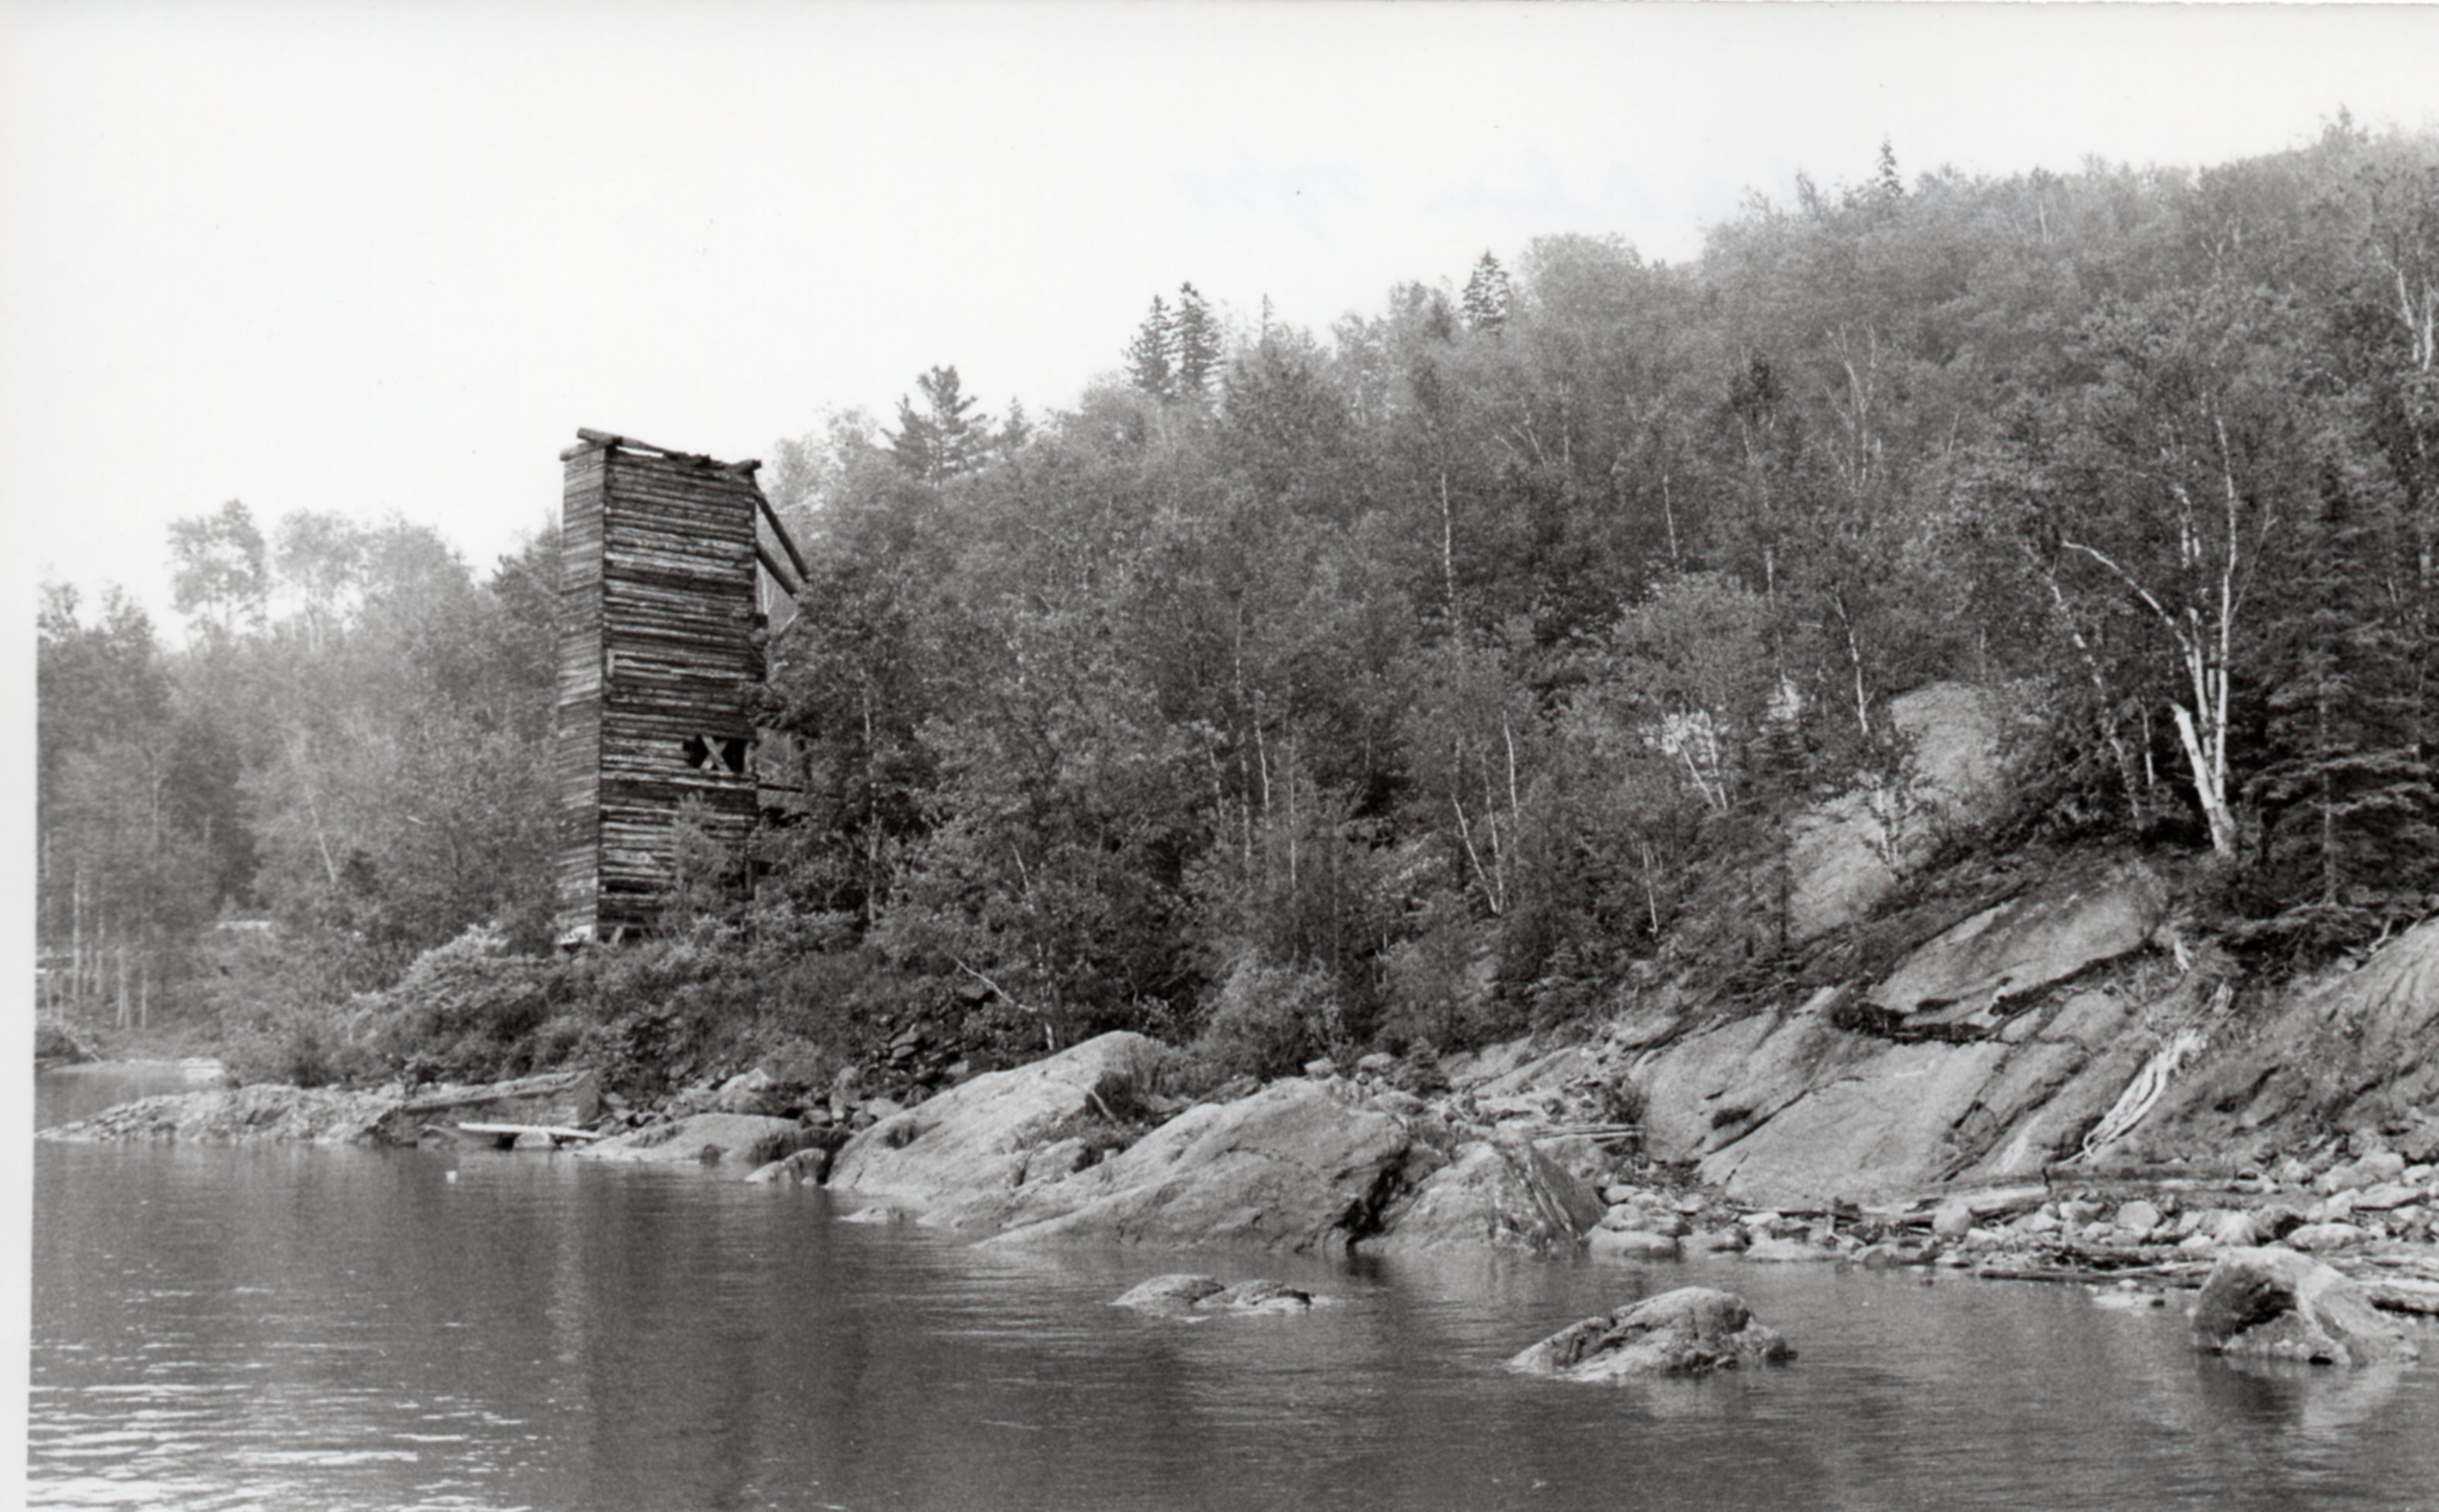 Photographie en noir et blanc de la rive, recouverte de rocher et d’arbres, du lac Témiscamingue avec une haute structure de planche en forme de tour carrée.